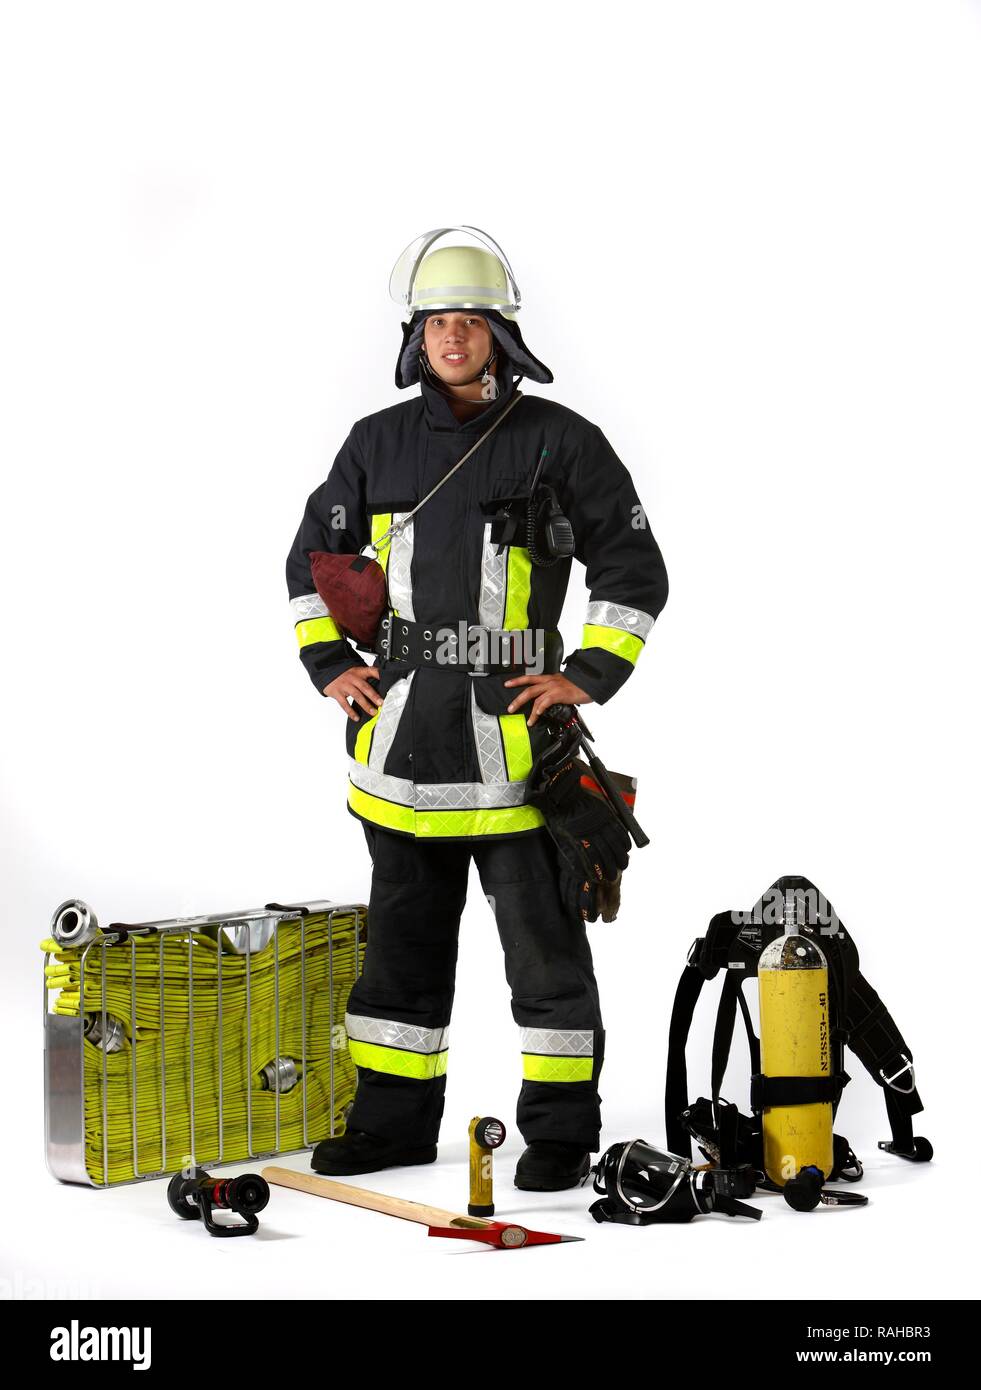 Vigile del fuoco, parte di una squadra di risposta per la lotta antincendio, con abbigliamento protettivo realizzato in Nomex, un casco con una visiera, un incendio ax, Foto Stock